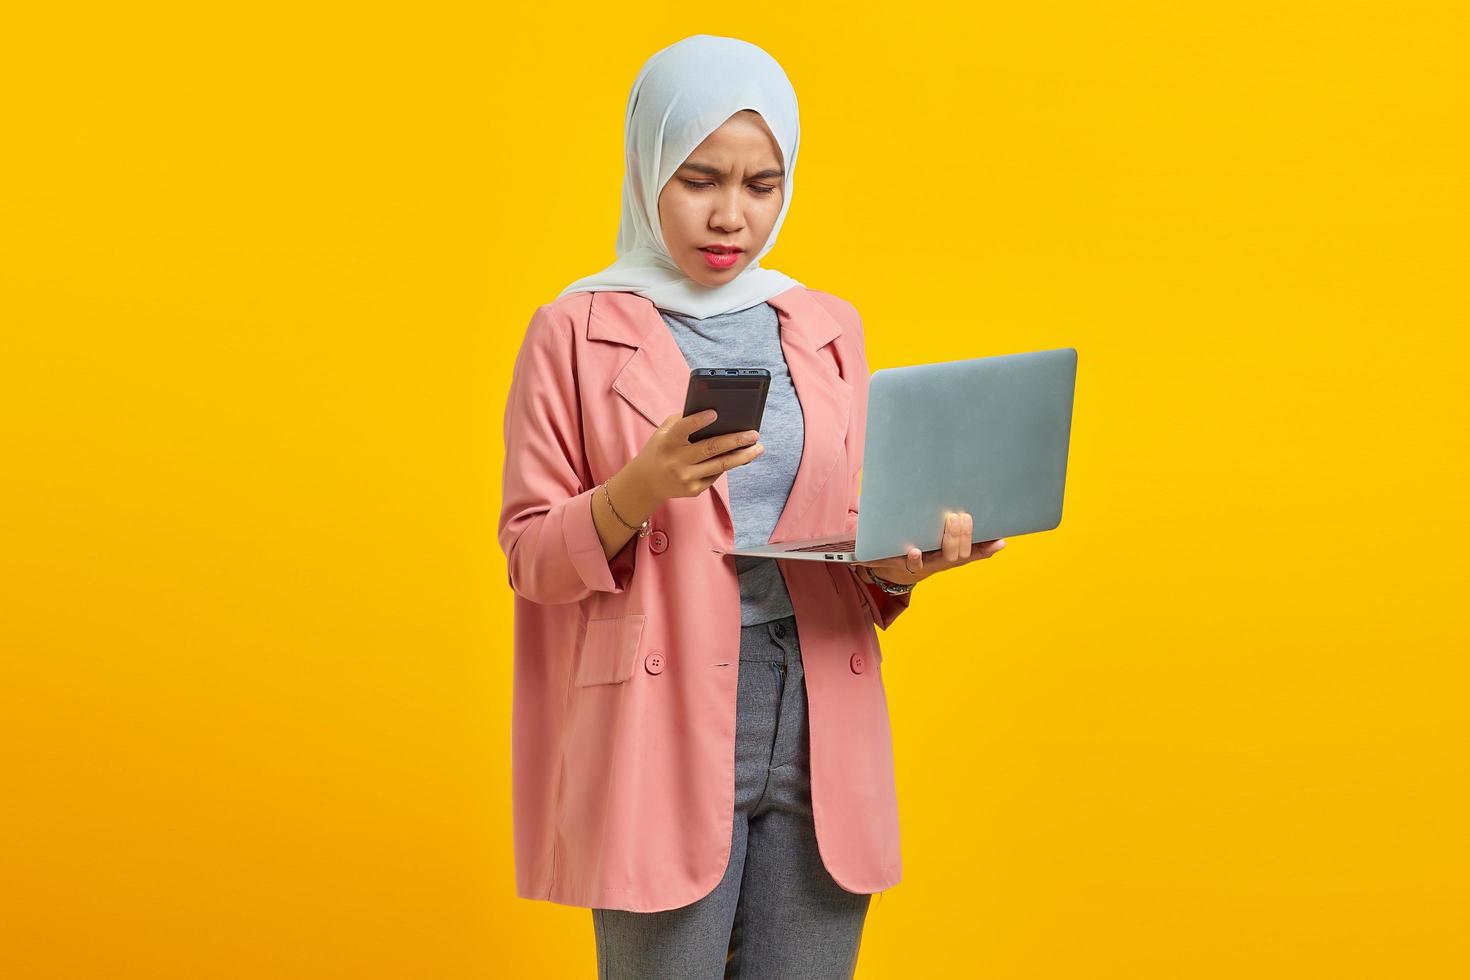 boze jonge vrouw die laptop en mobiele telefoon gebruikt terwijl ze geïsoleerd op gele achtergrond staat foto